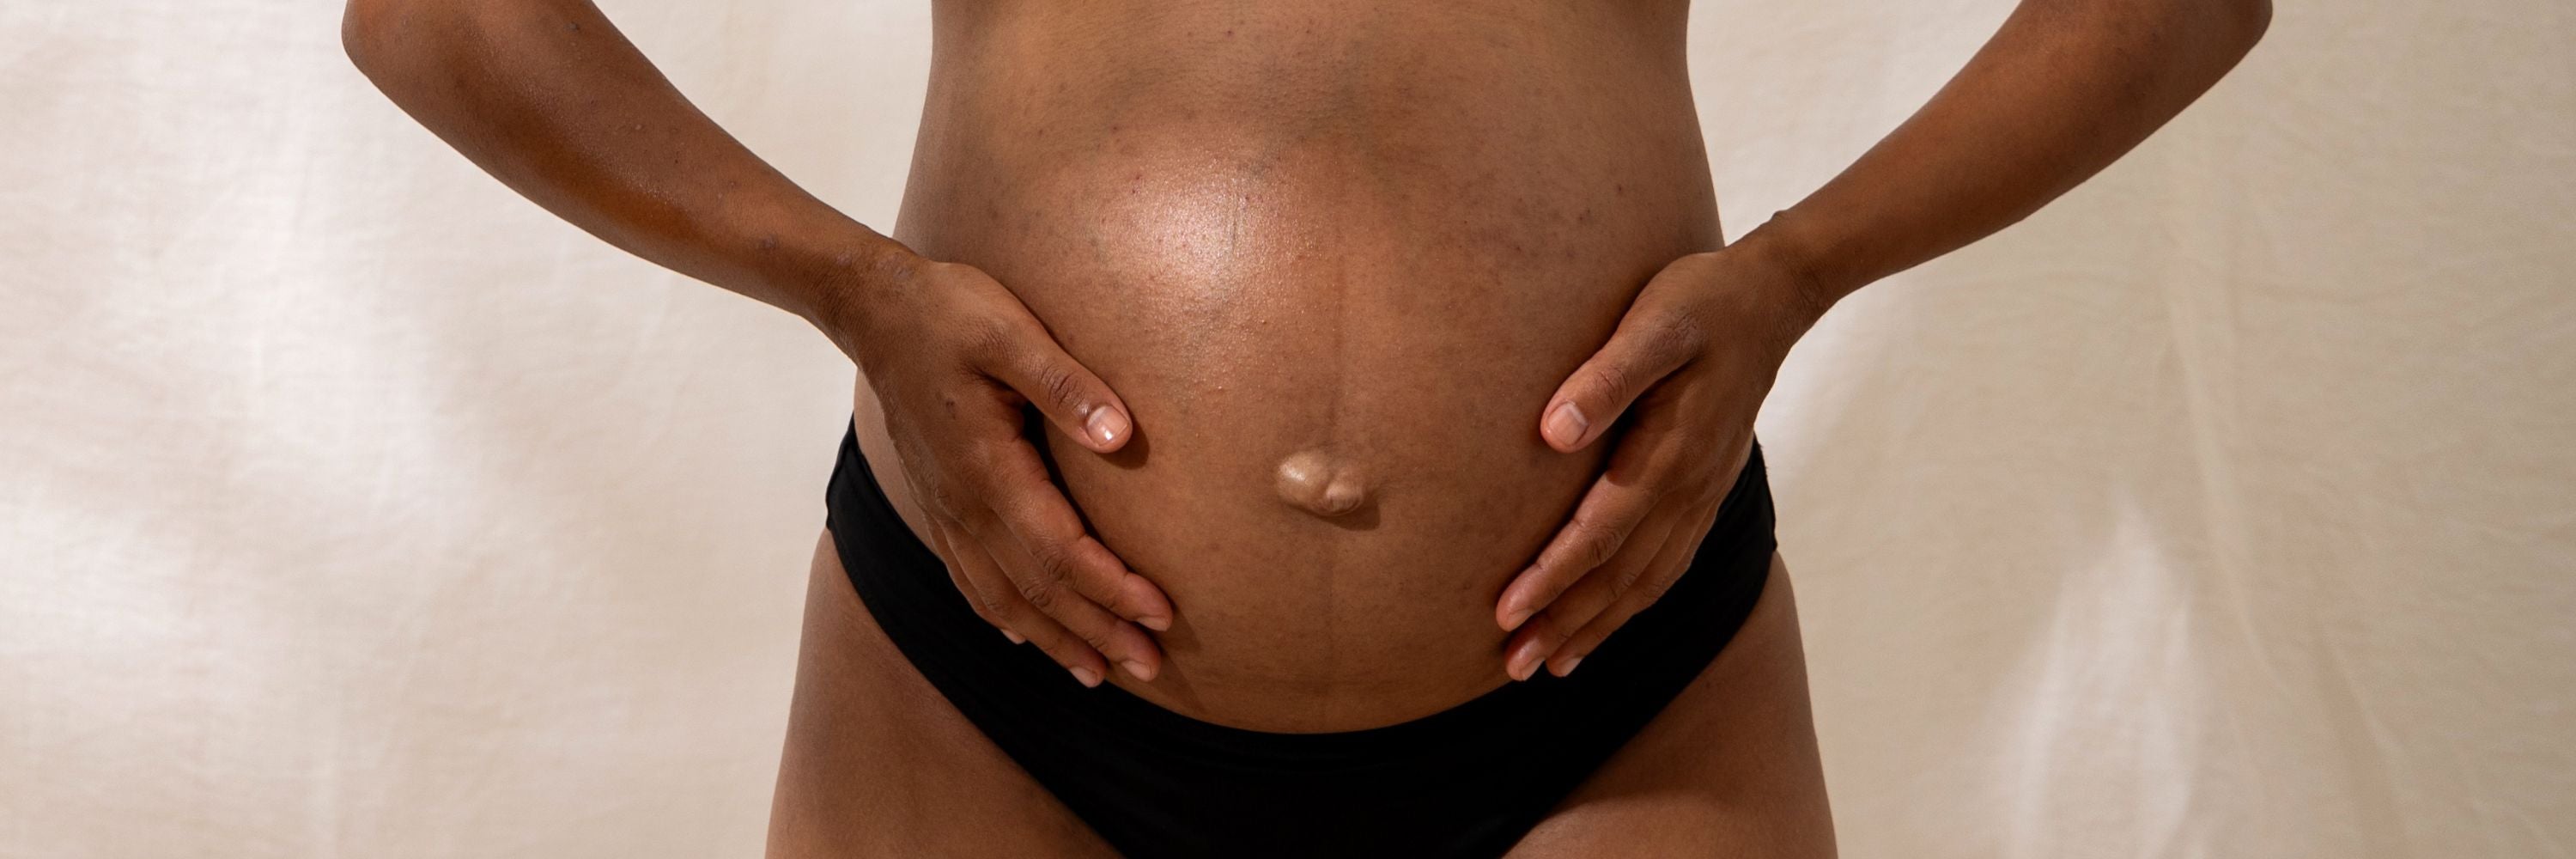 cadeaux gapianne femmes enceintes grossesse post partum maternité